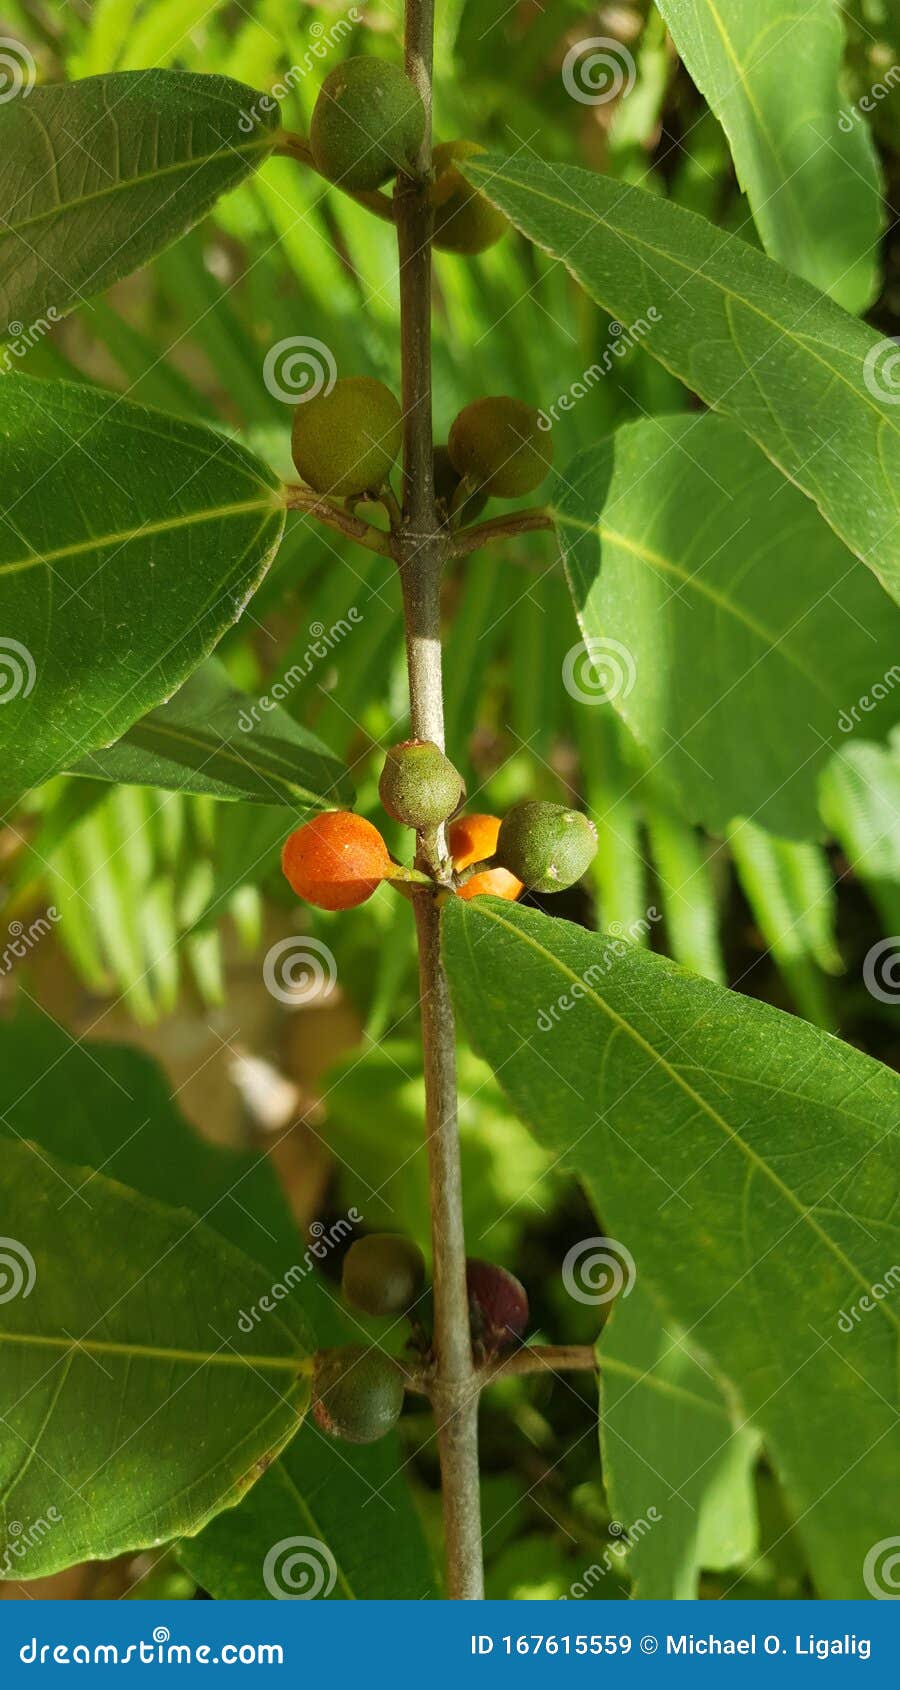 أشجار الفاكهة البرية في الفلبين